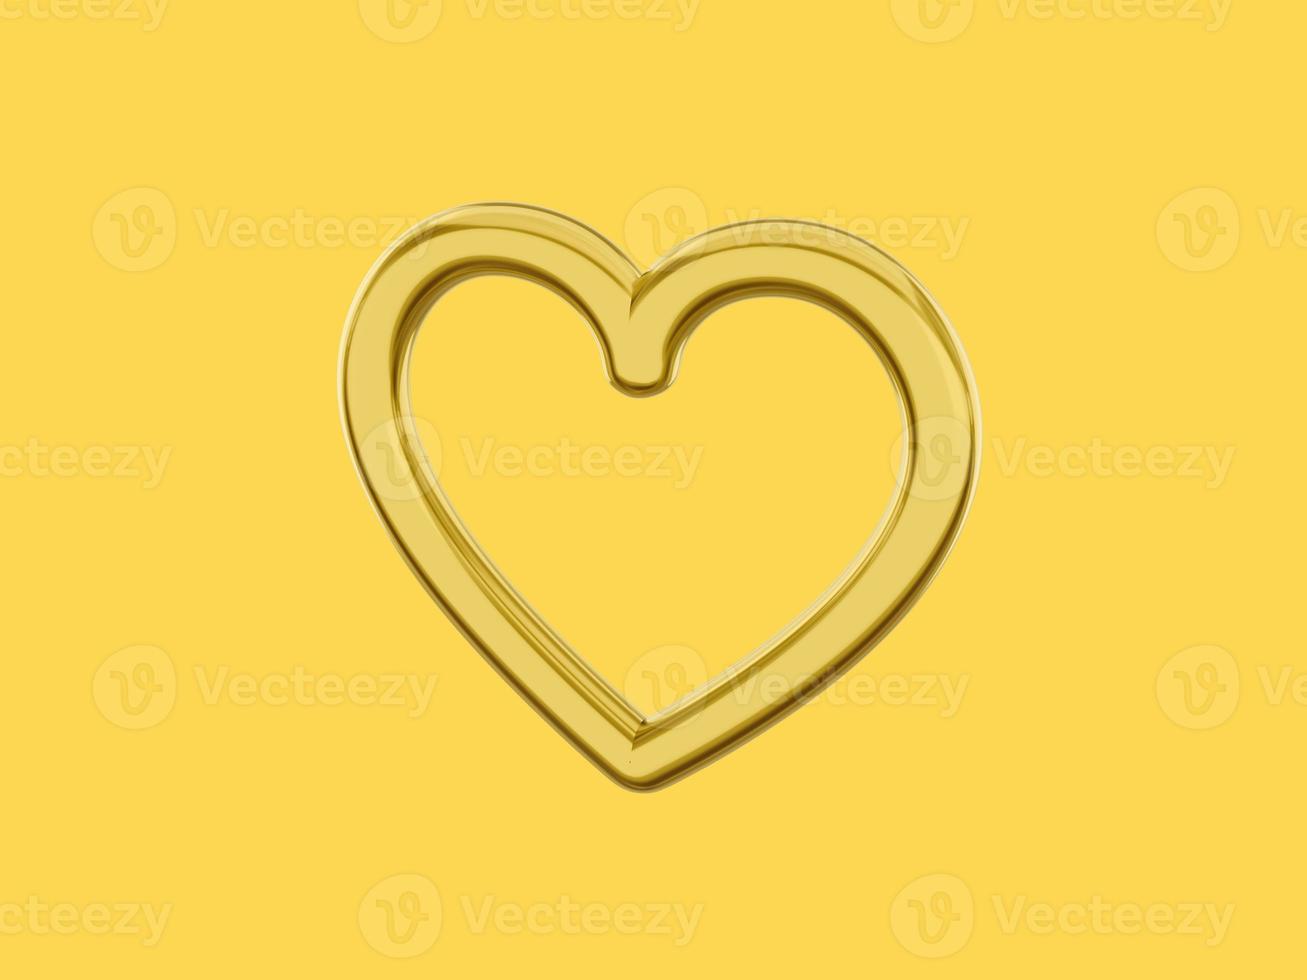 coração de metal de brinquedo. cor única dourada. símbolo do amor. em um fundo amarelo sólido. vista do lado direito. renderização 3D. foto